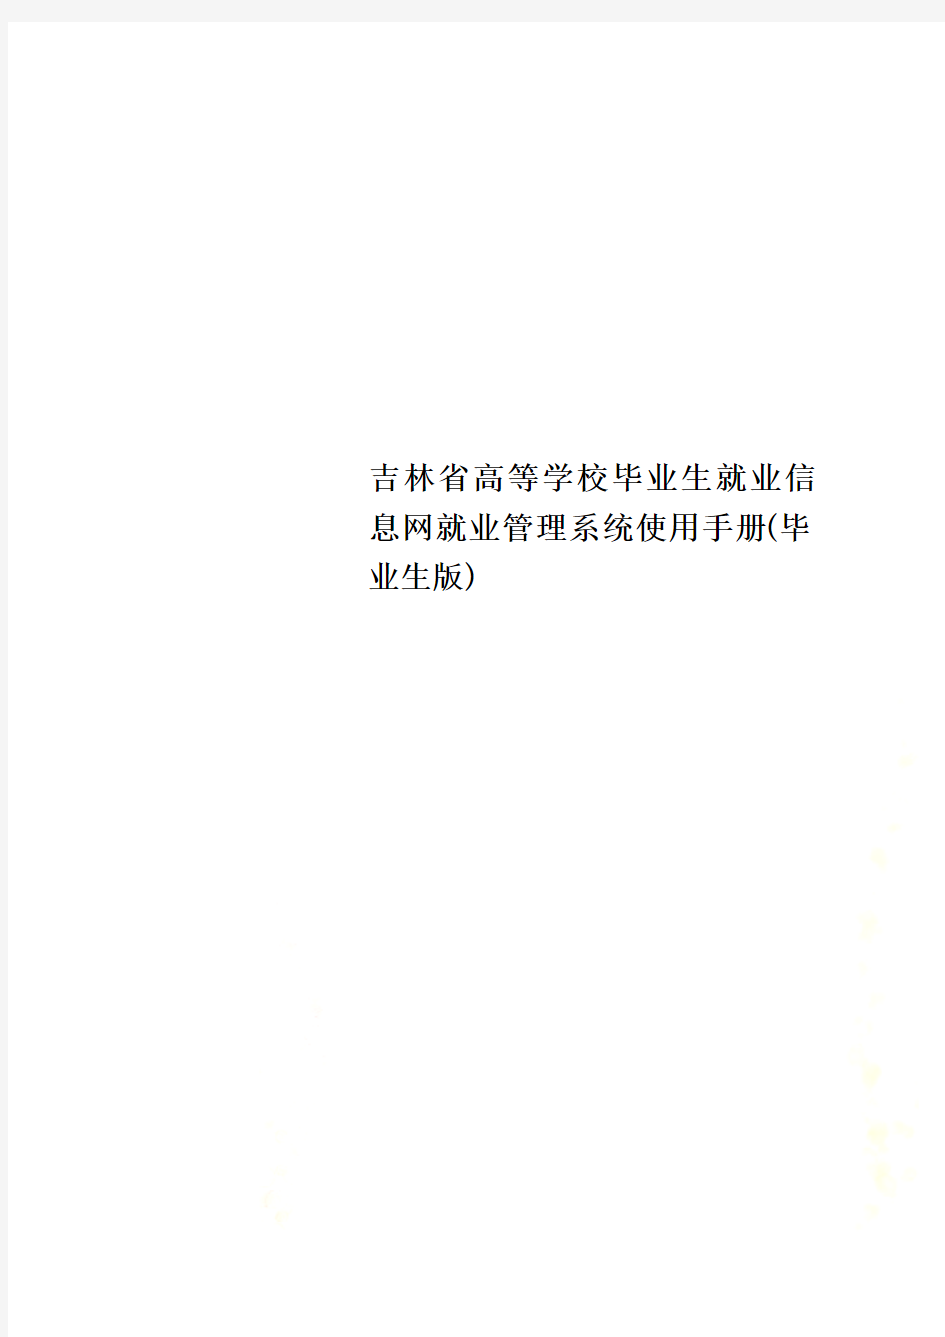 吉林省高等学校毕业生就业信息网就业管理系统使用手册(毕业生版)